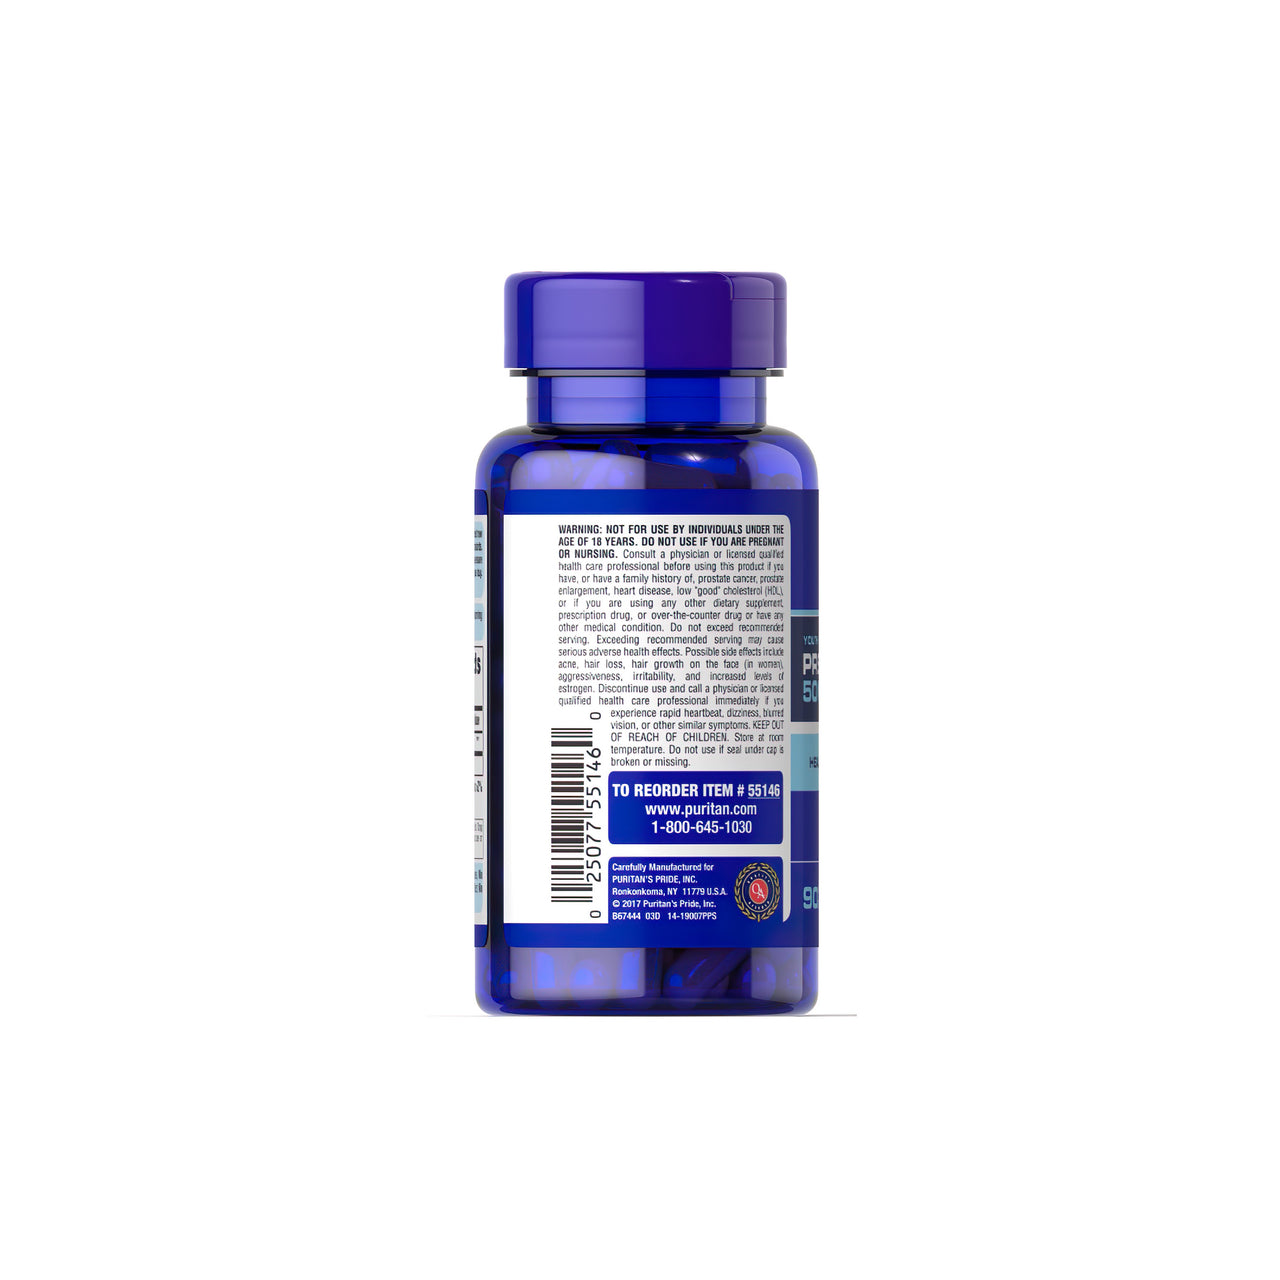 Auf der Rückseite einer blauen Flasche mit einem Etikett, auf dem die Schlagworte "gesundes Altern" und "Alterungsprogramm" stehen, befinden sich die Pregnenolone 50 mg 90 Rapid Release Capsules von Puritan's Pride.